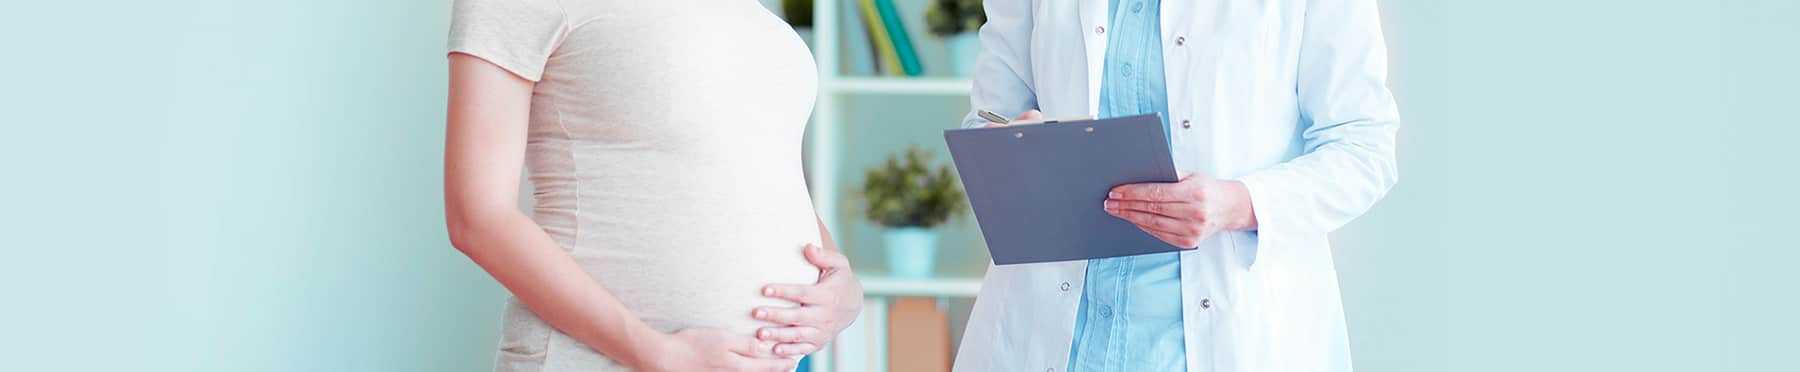 Что делать, если болит поясница при беременности?